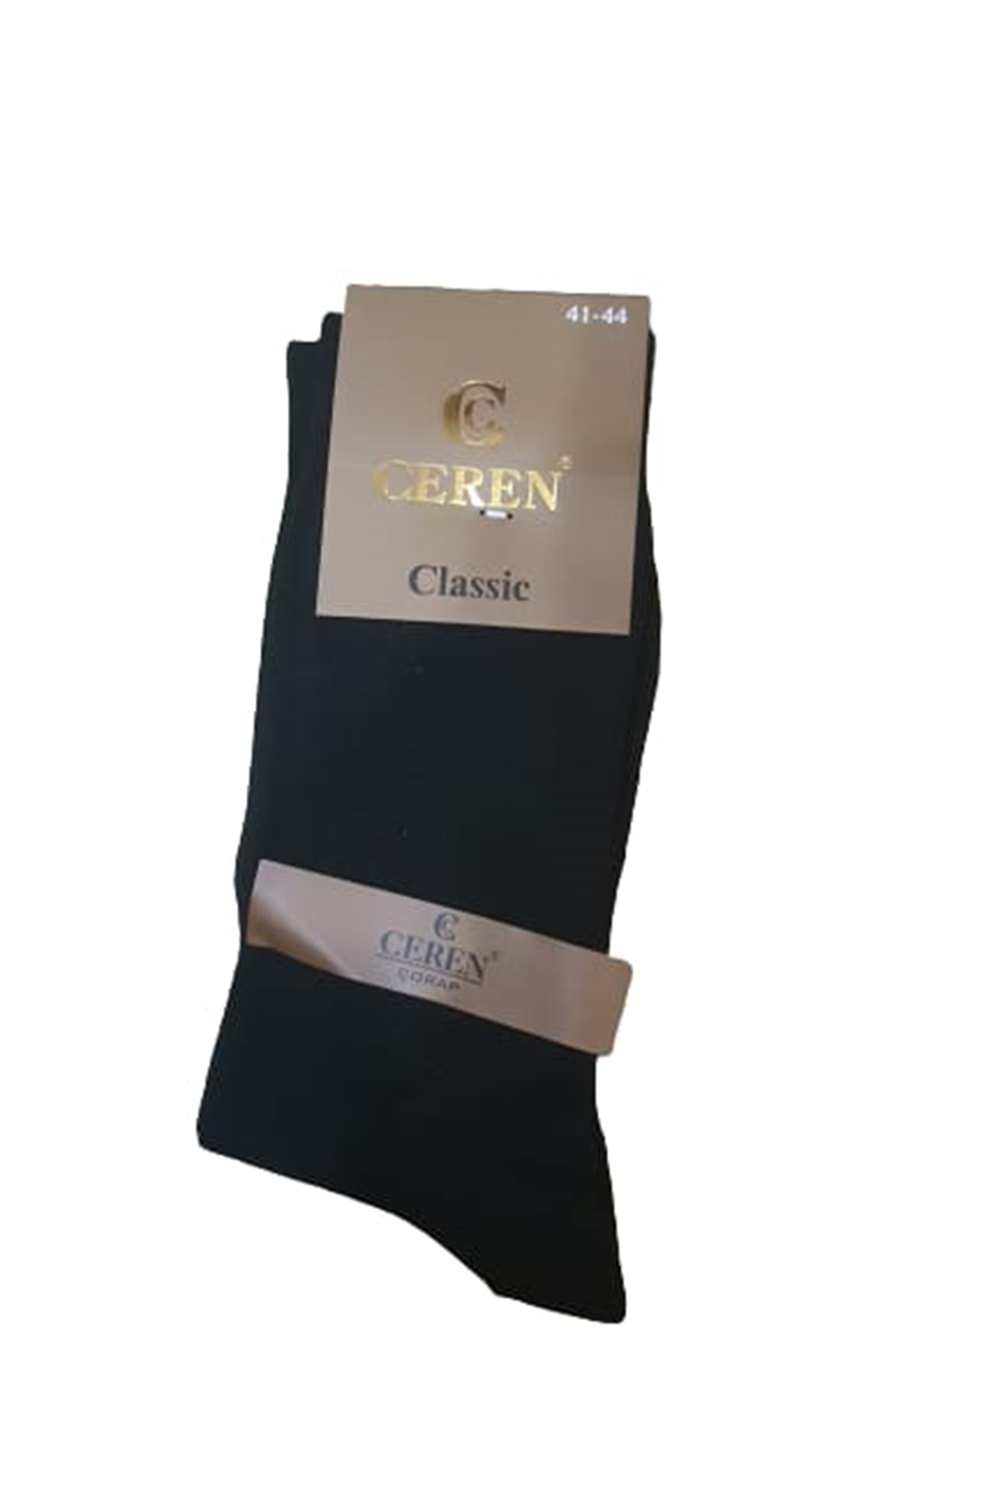 Ceren Erkek Bambu Classic Çorap (4 Adet) C 00275 - Karışık Renkli - 41-44